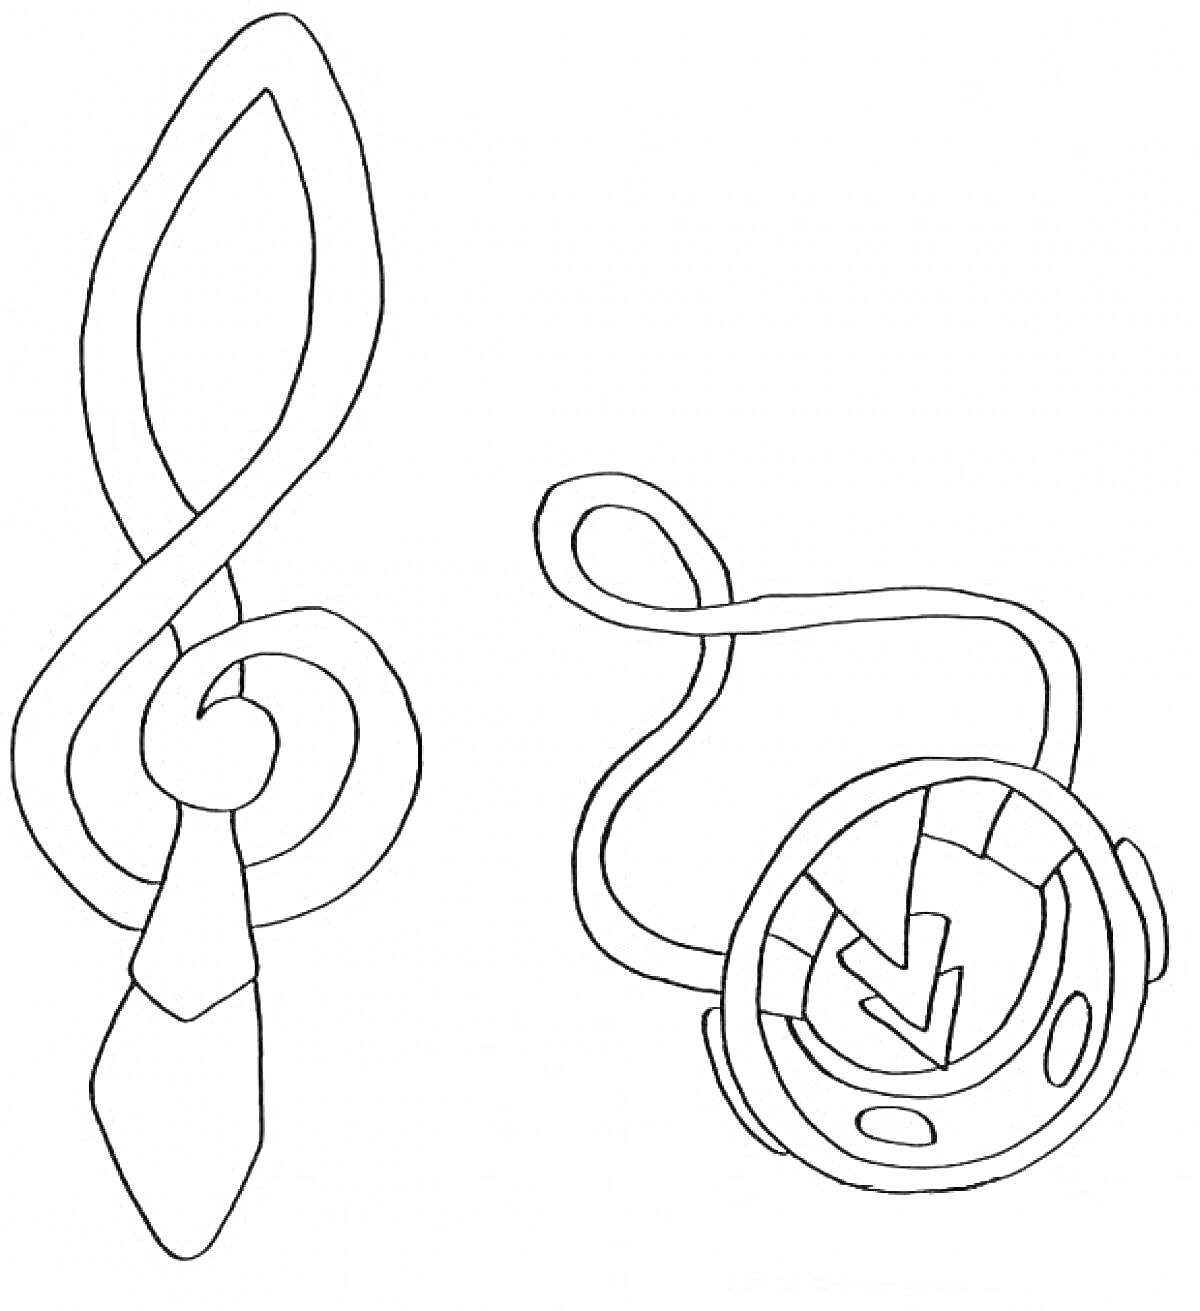 Раскраска Волшебные артефакты Винкс в форме символов и знаков